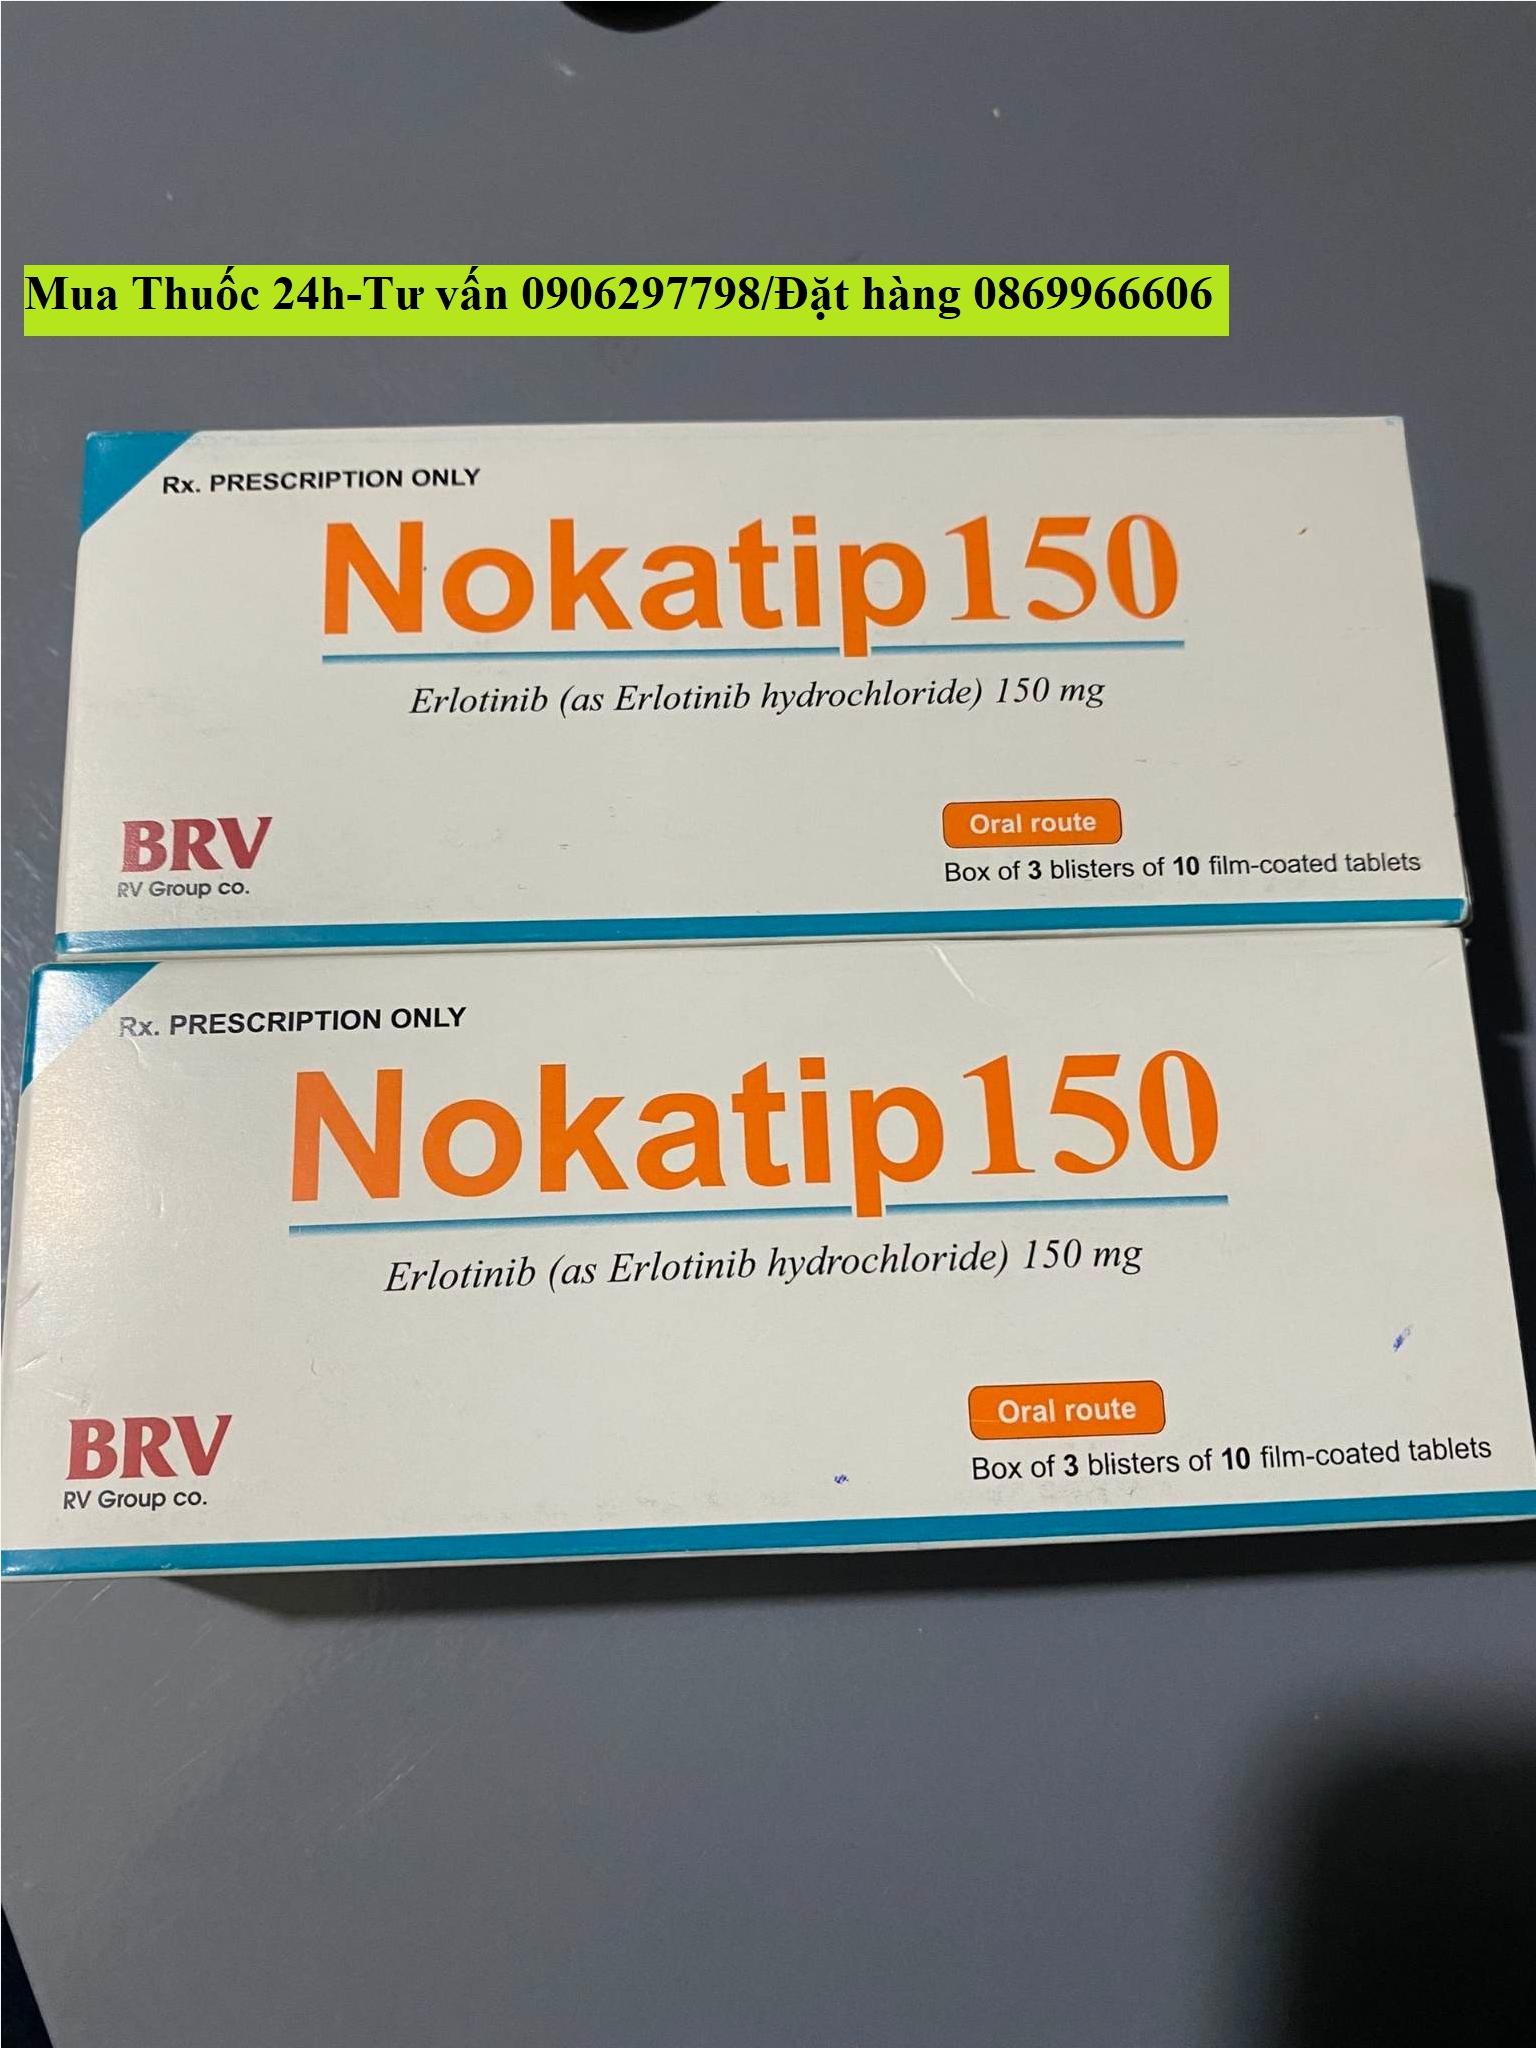 Thuốc Nokatip 150 Erlotinib 150mg giá bao nhiêu mua ở đâu?